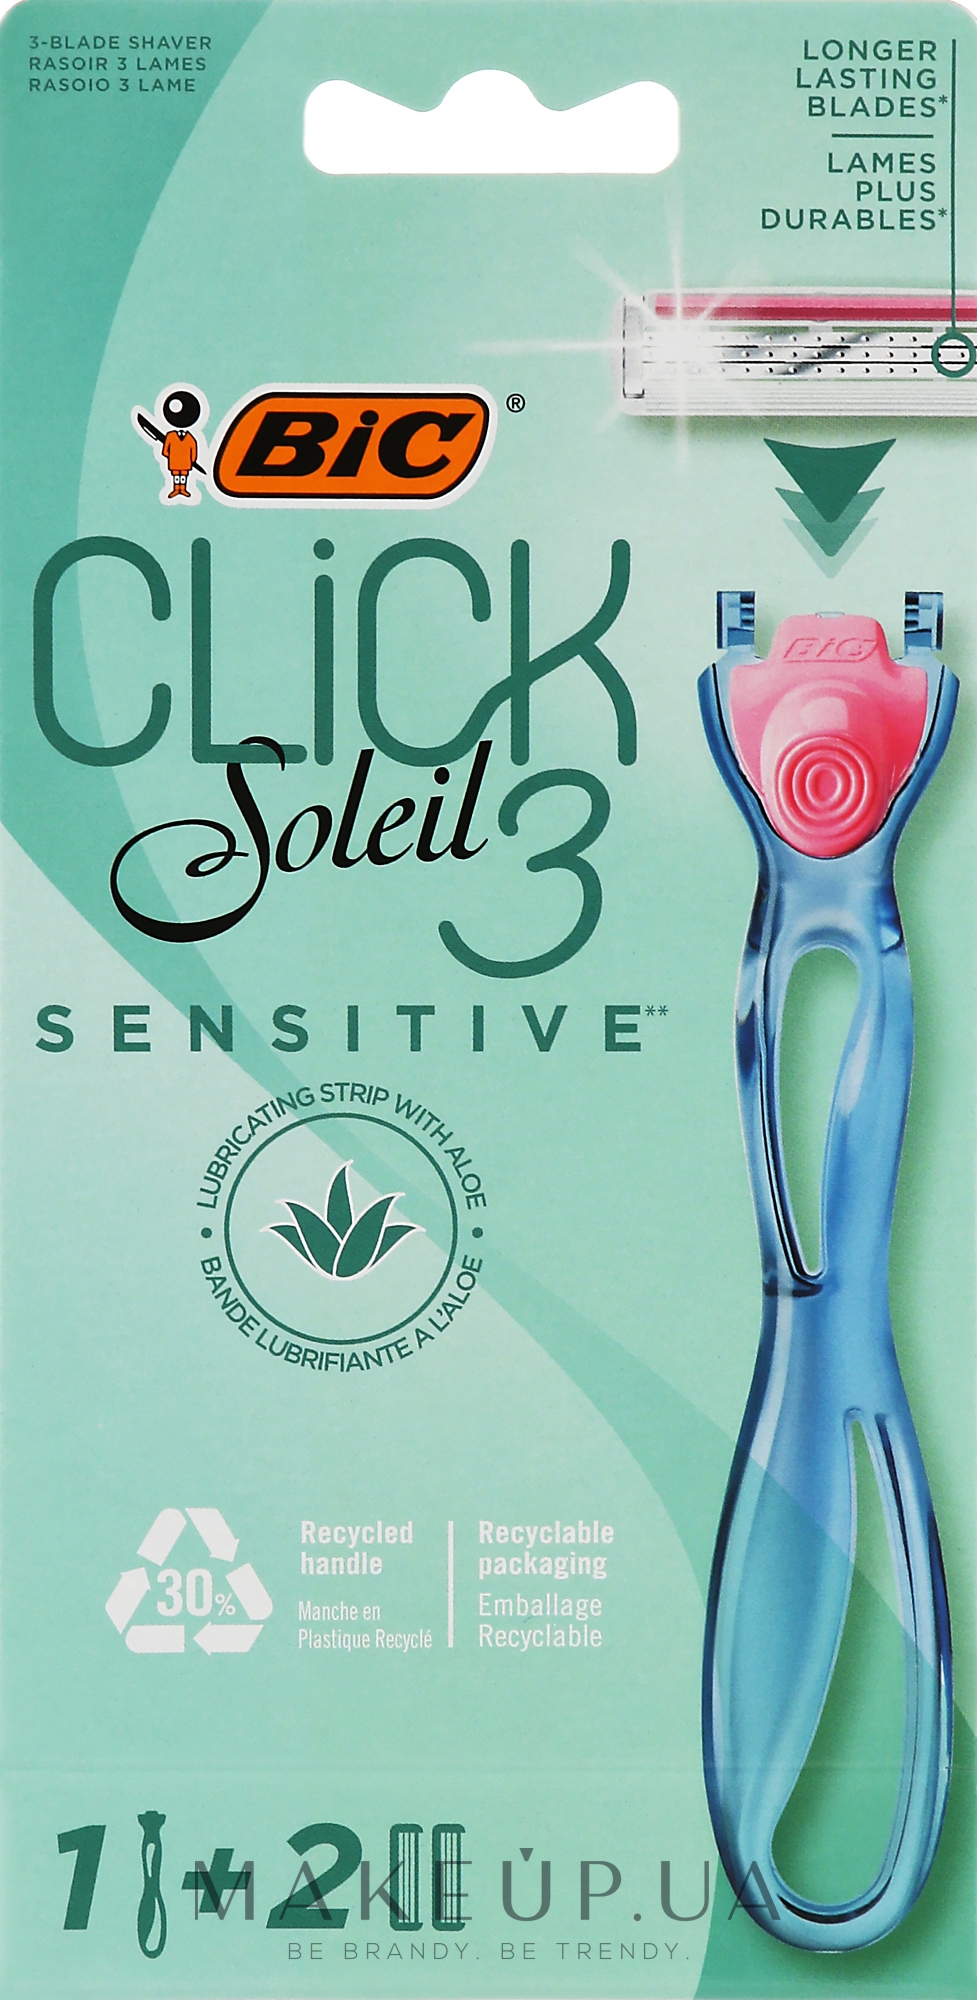 Женская бритва c 2 сменными кассетами - Bic Click 3 Soleil Sensitive — фото 2шт